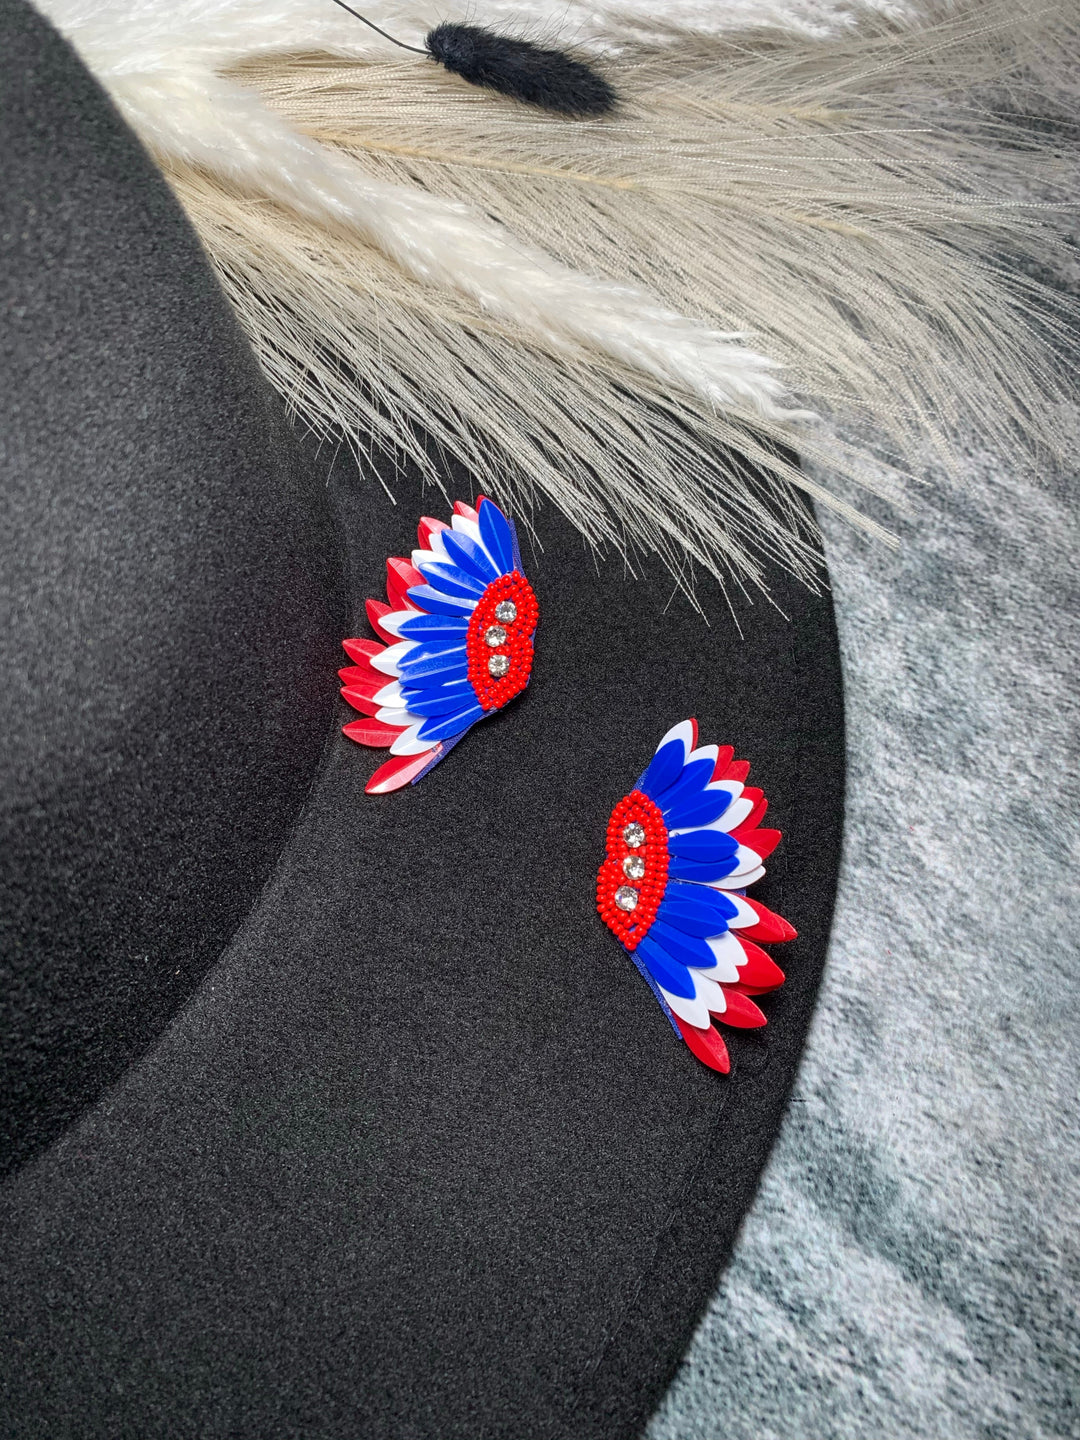 American Feather Earrings - Jayden Layne